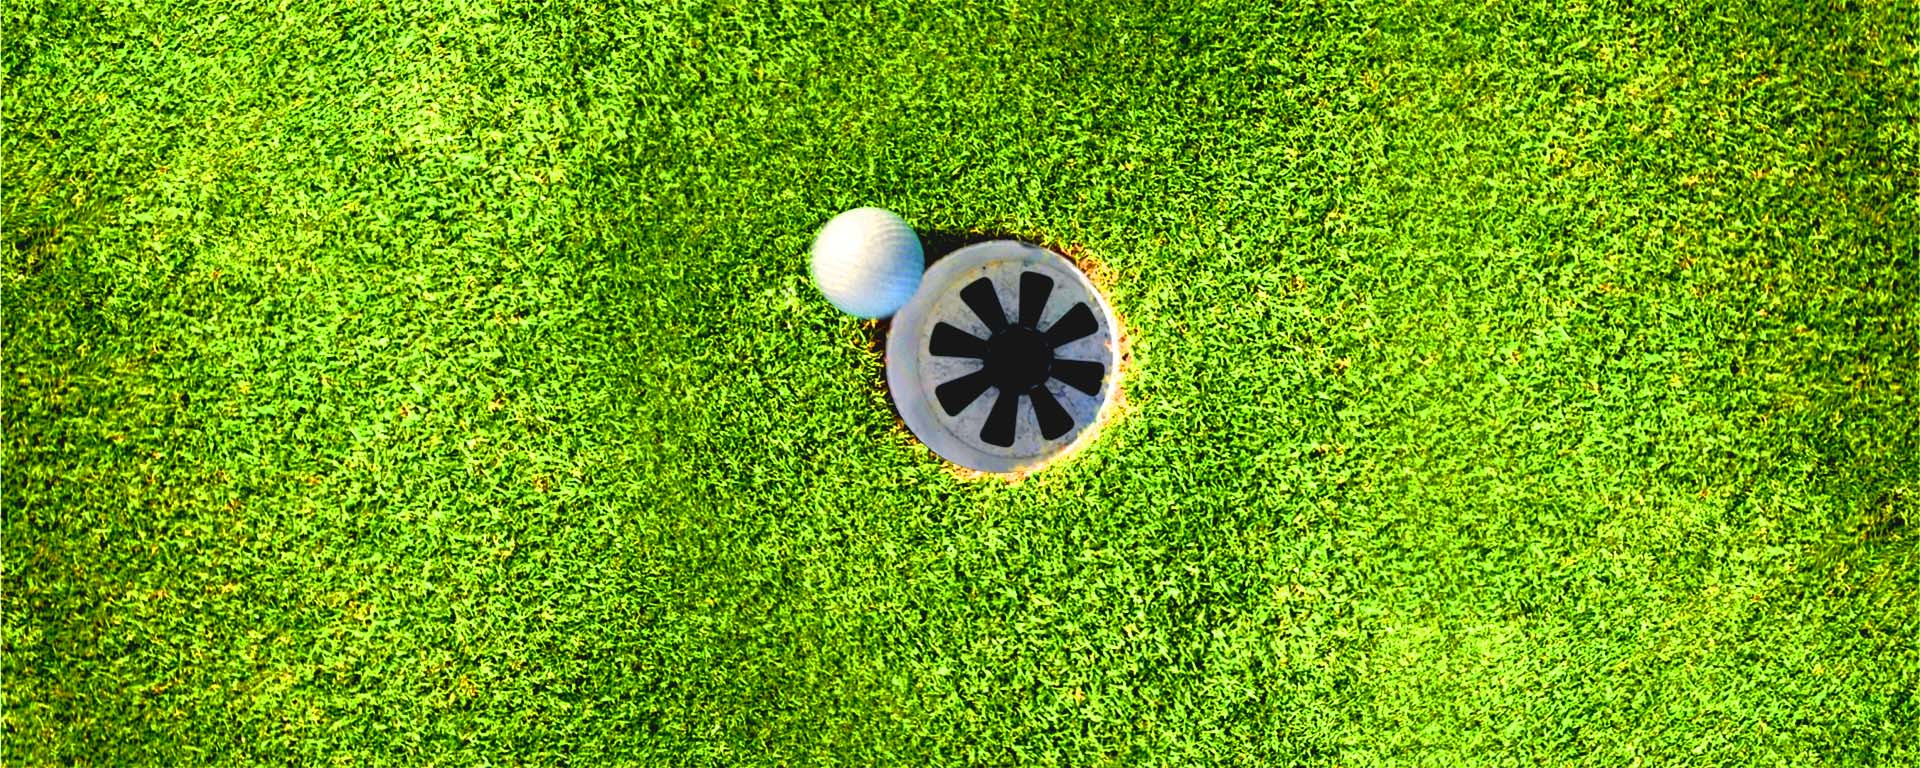 Golf ball near hole in green.